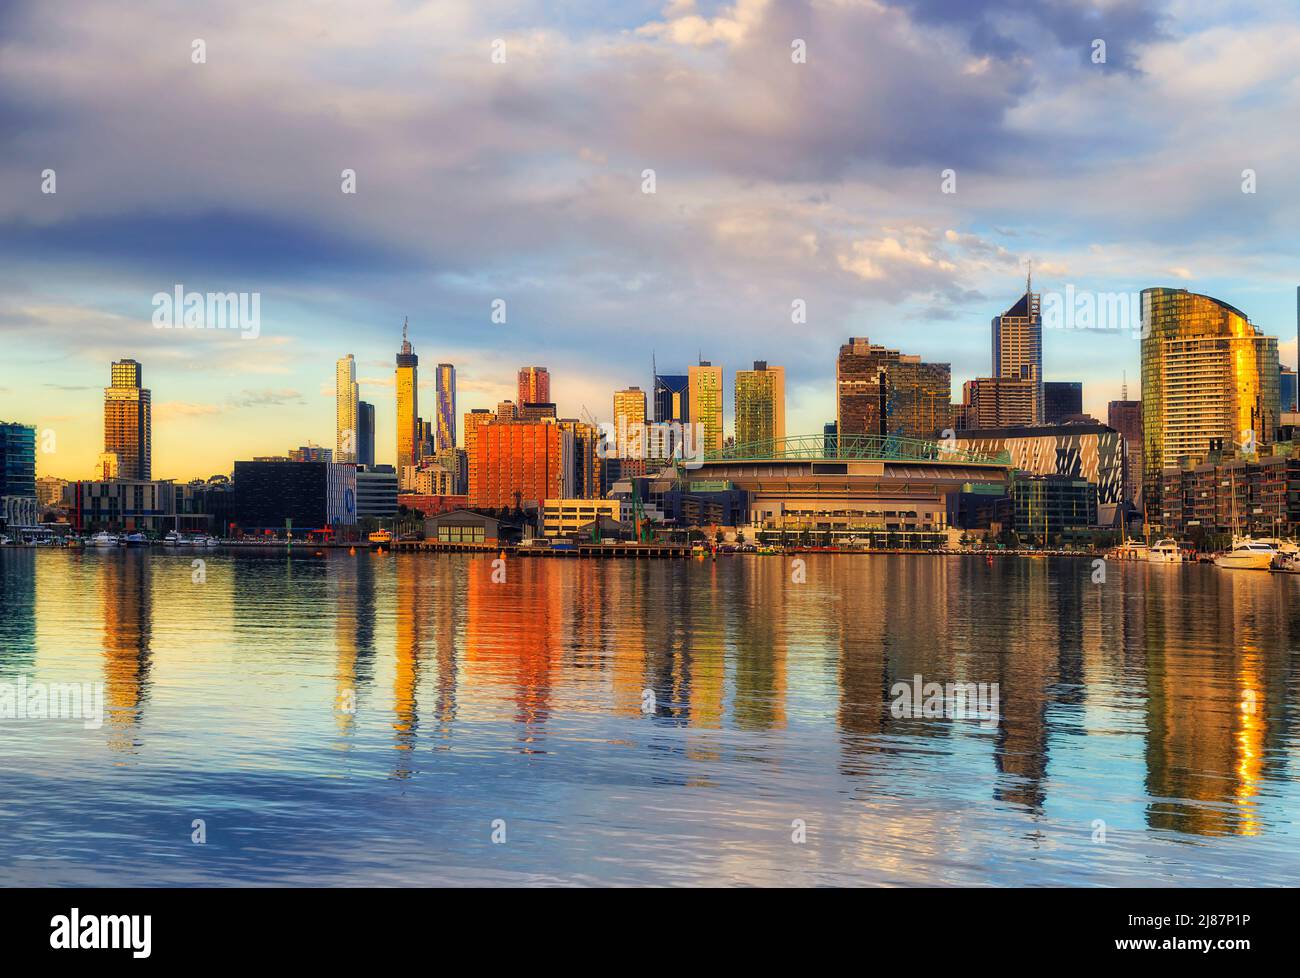 Scenografica e colorata luce solare sul lungomare di Docklands, sobborgo del fiume Yarra, nella città australiana di Melbourne. Foto Stock